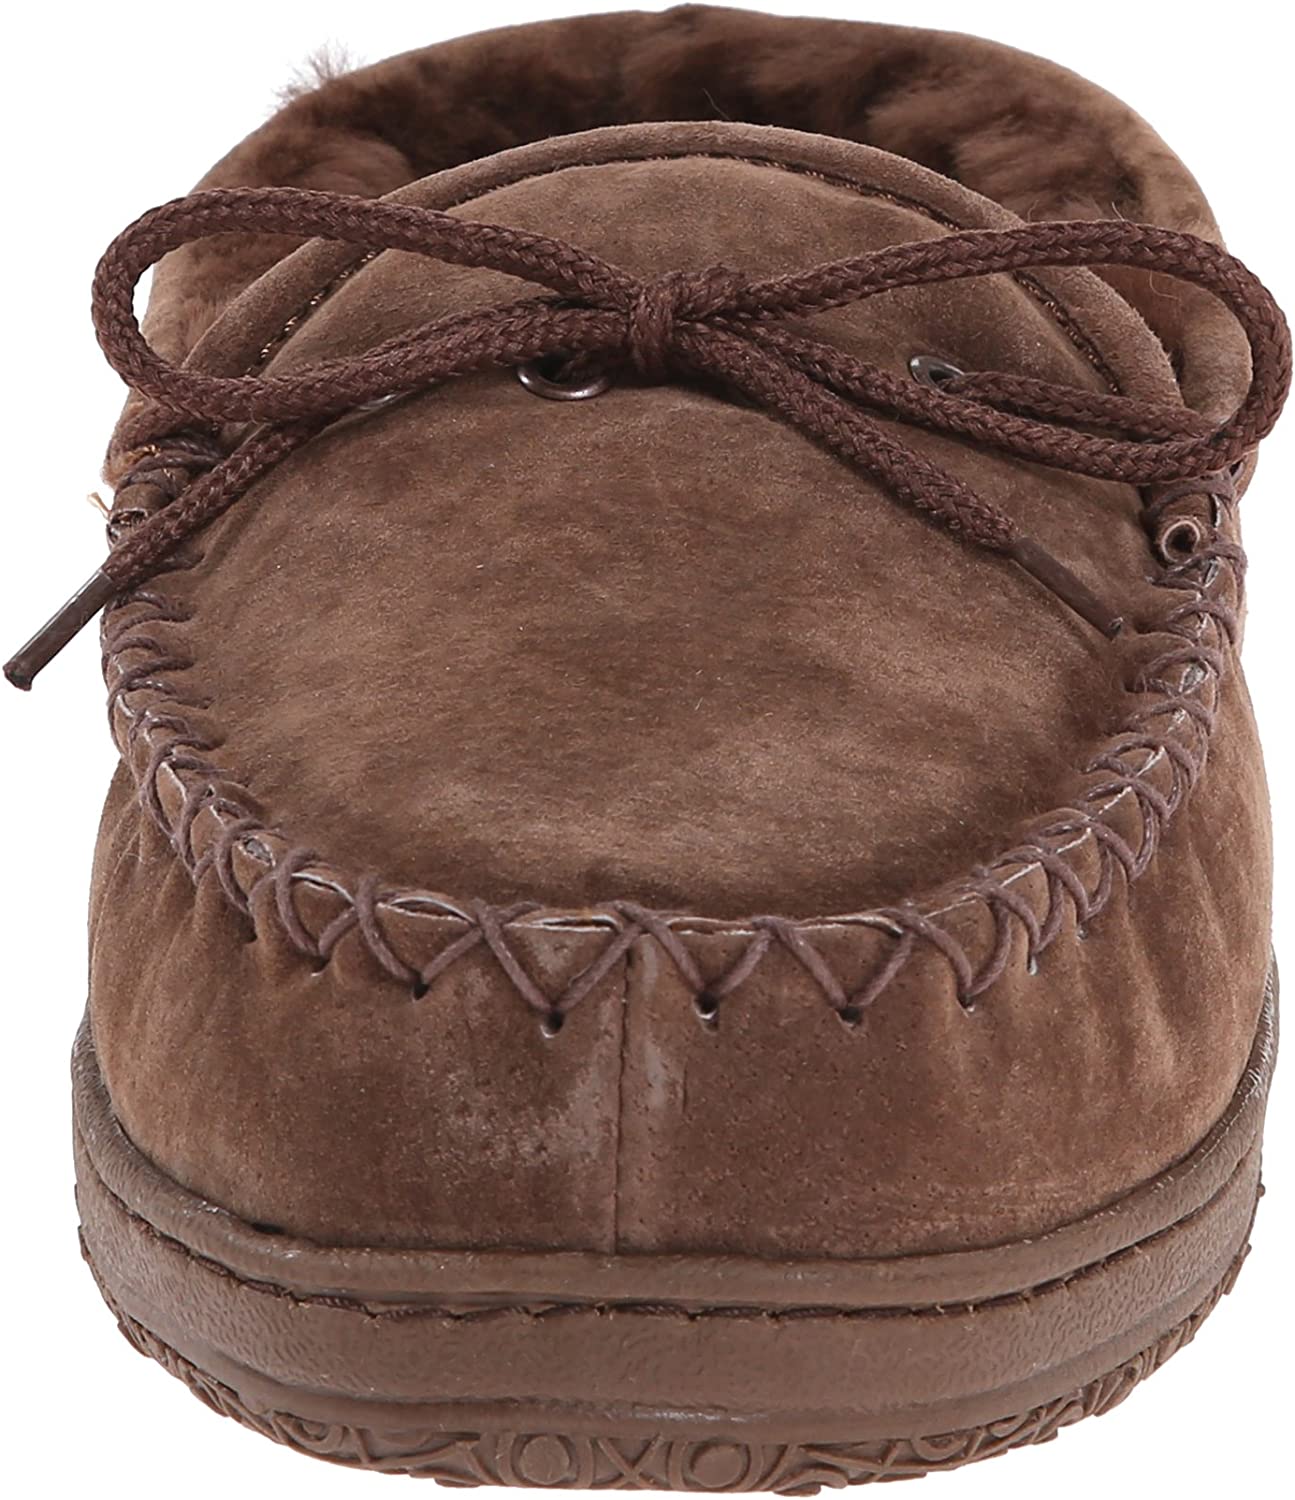 Old Friend Footwear Men's Brown Loafer Moccasin 481166-M (9) - image 2 of 8